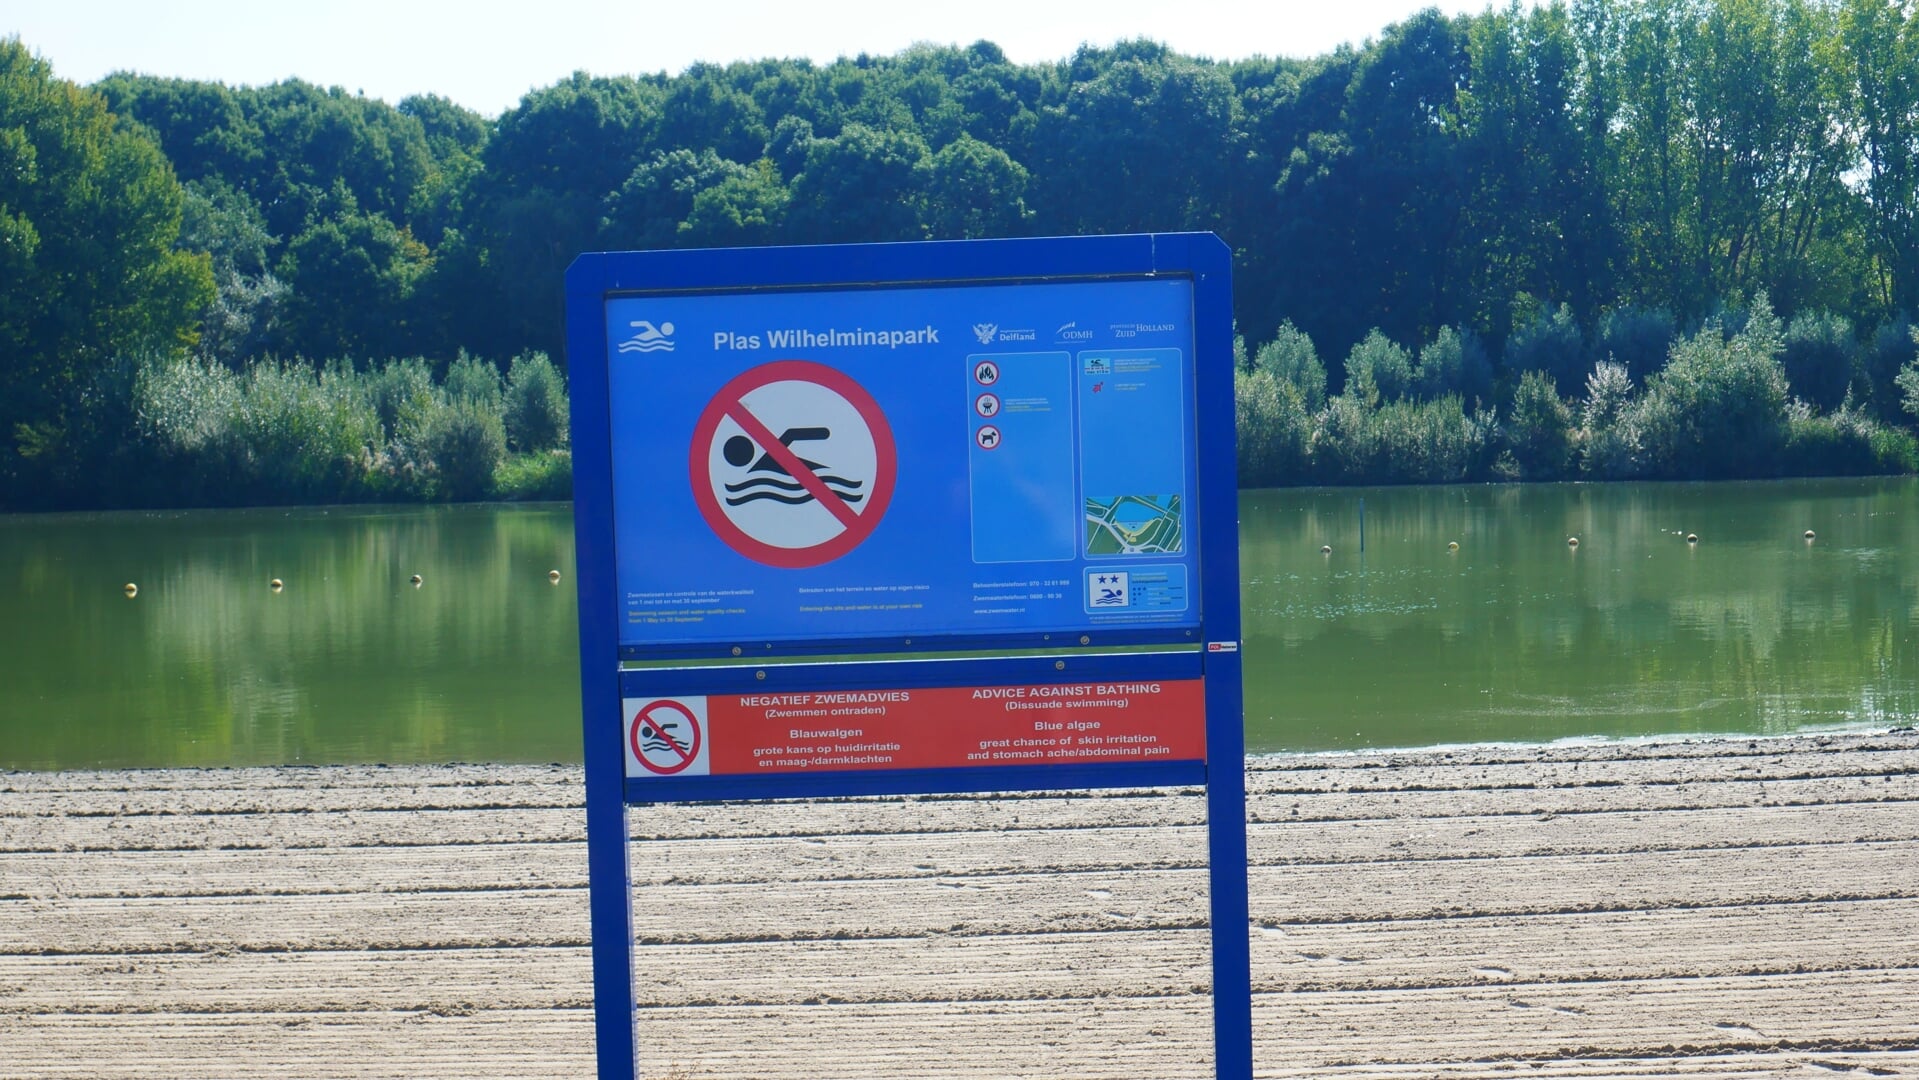 De plas in het Wilhelminapark wordt, net als in 2016, drooggelegd om blauwalg tegen te gaan.